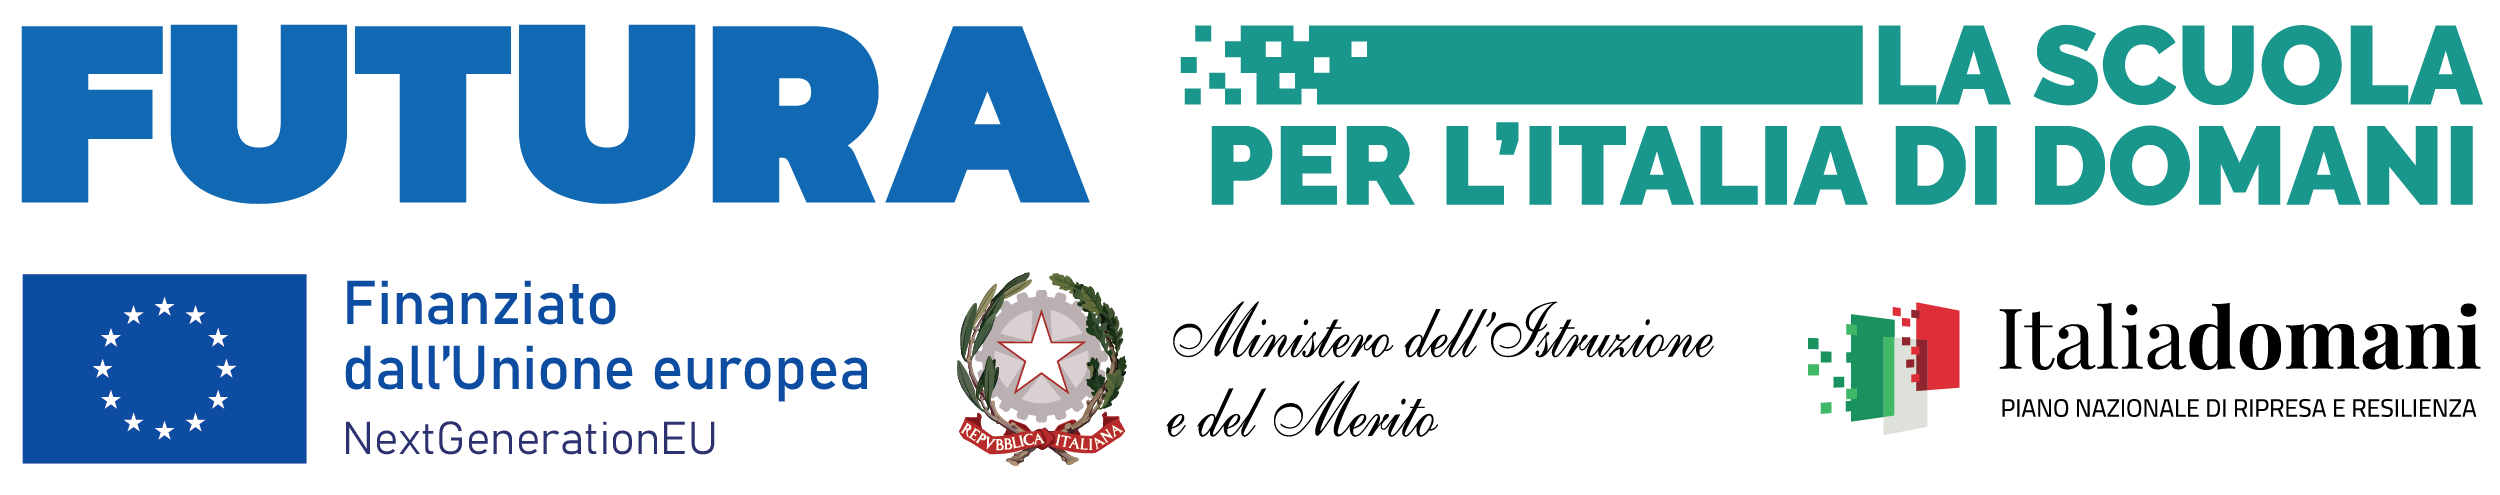 Logo dei Futura PNRR